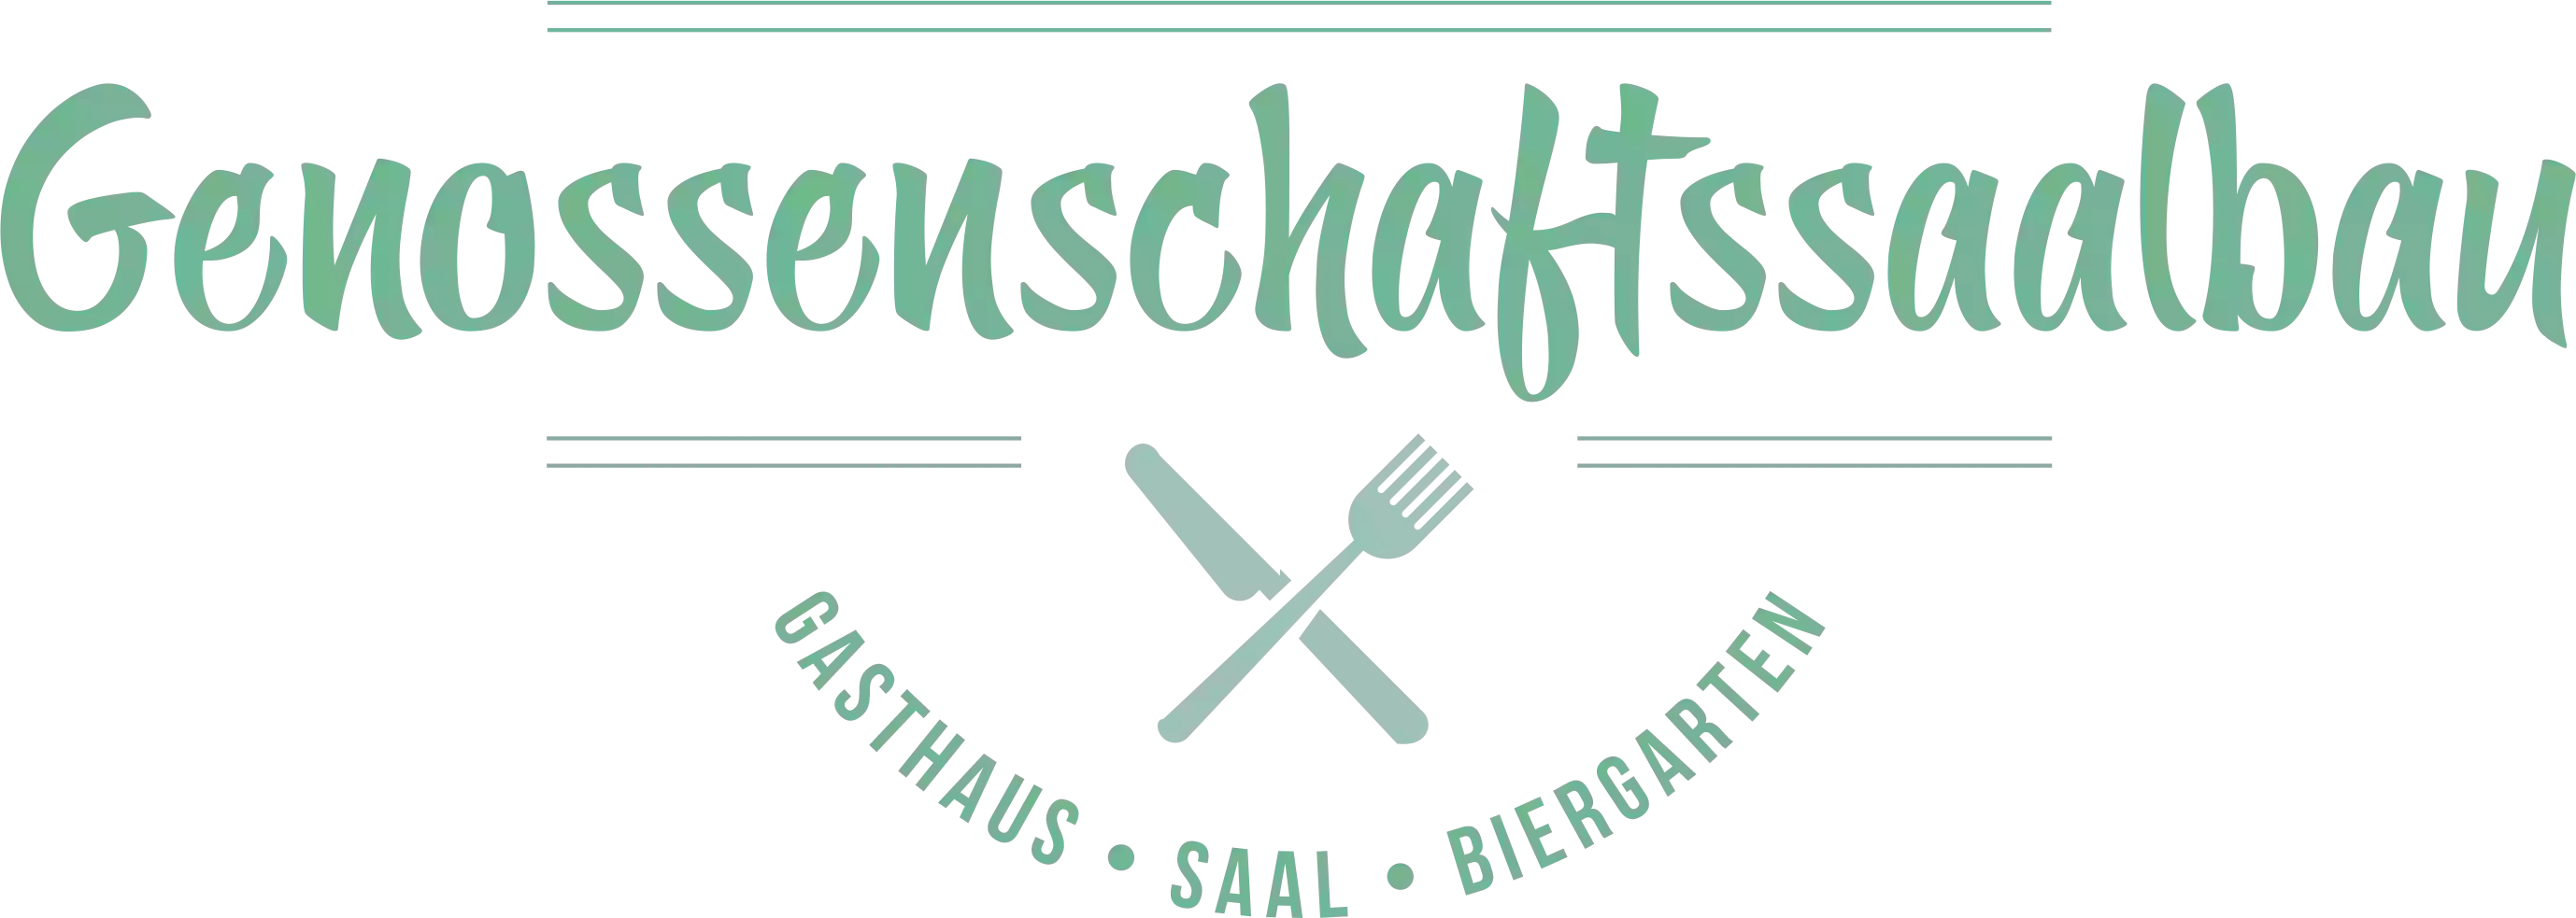 Genossenschaftssaalbau Restaurant Nürnberg